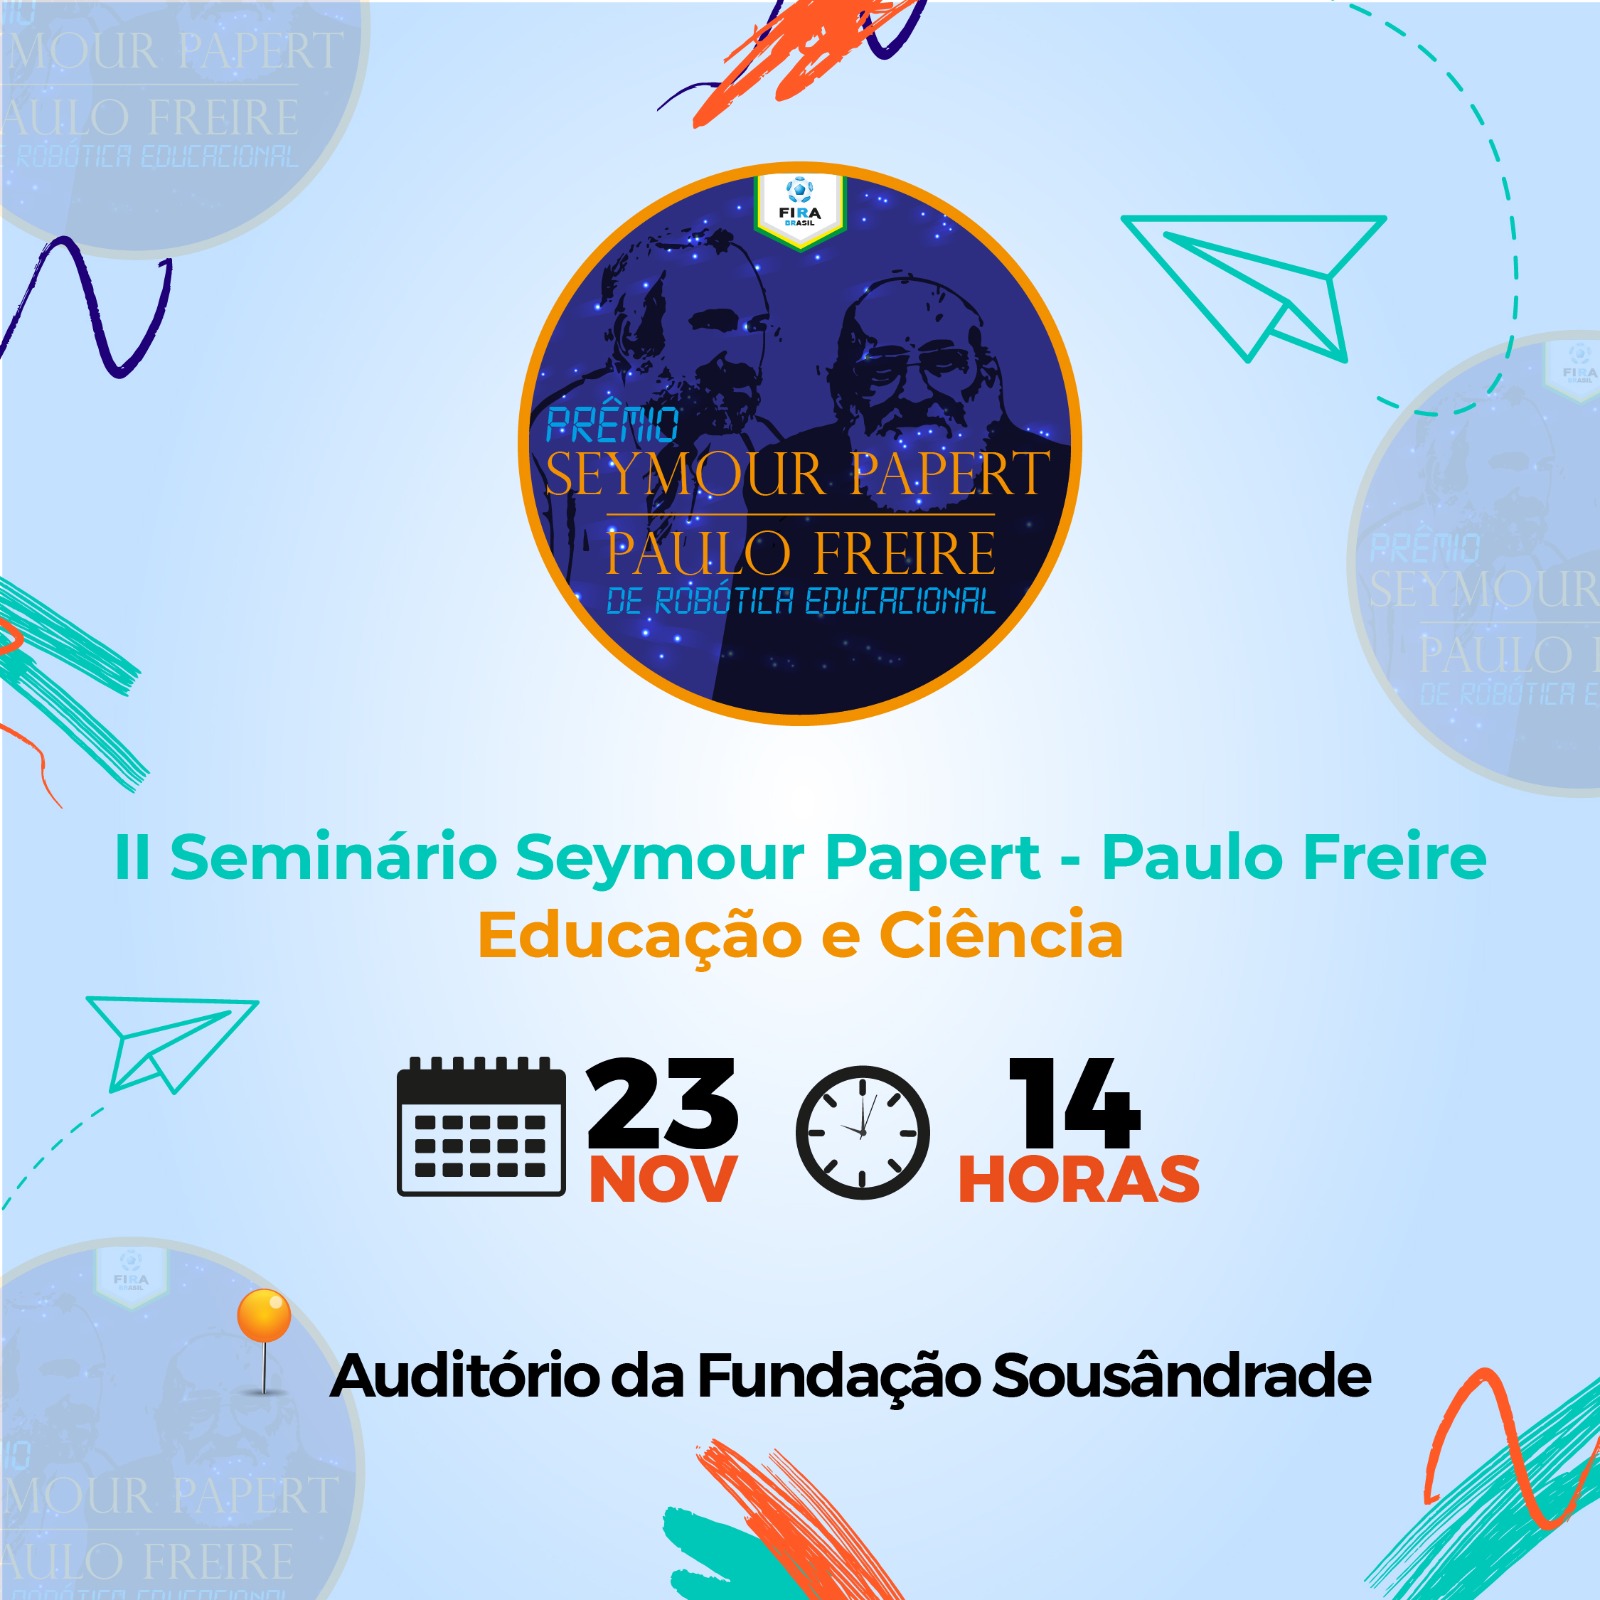 I Seminário Seymour Papert-Paulo Freire premia ações e experimentos em robótica